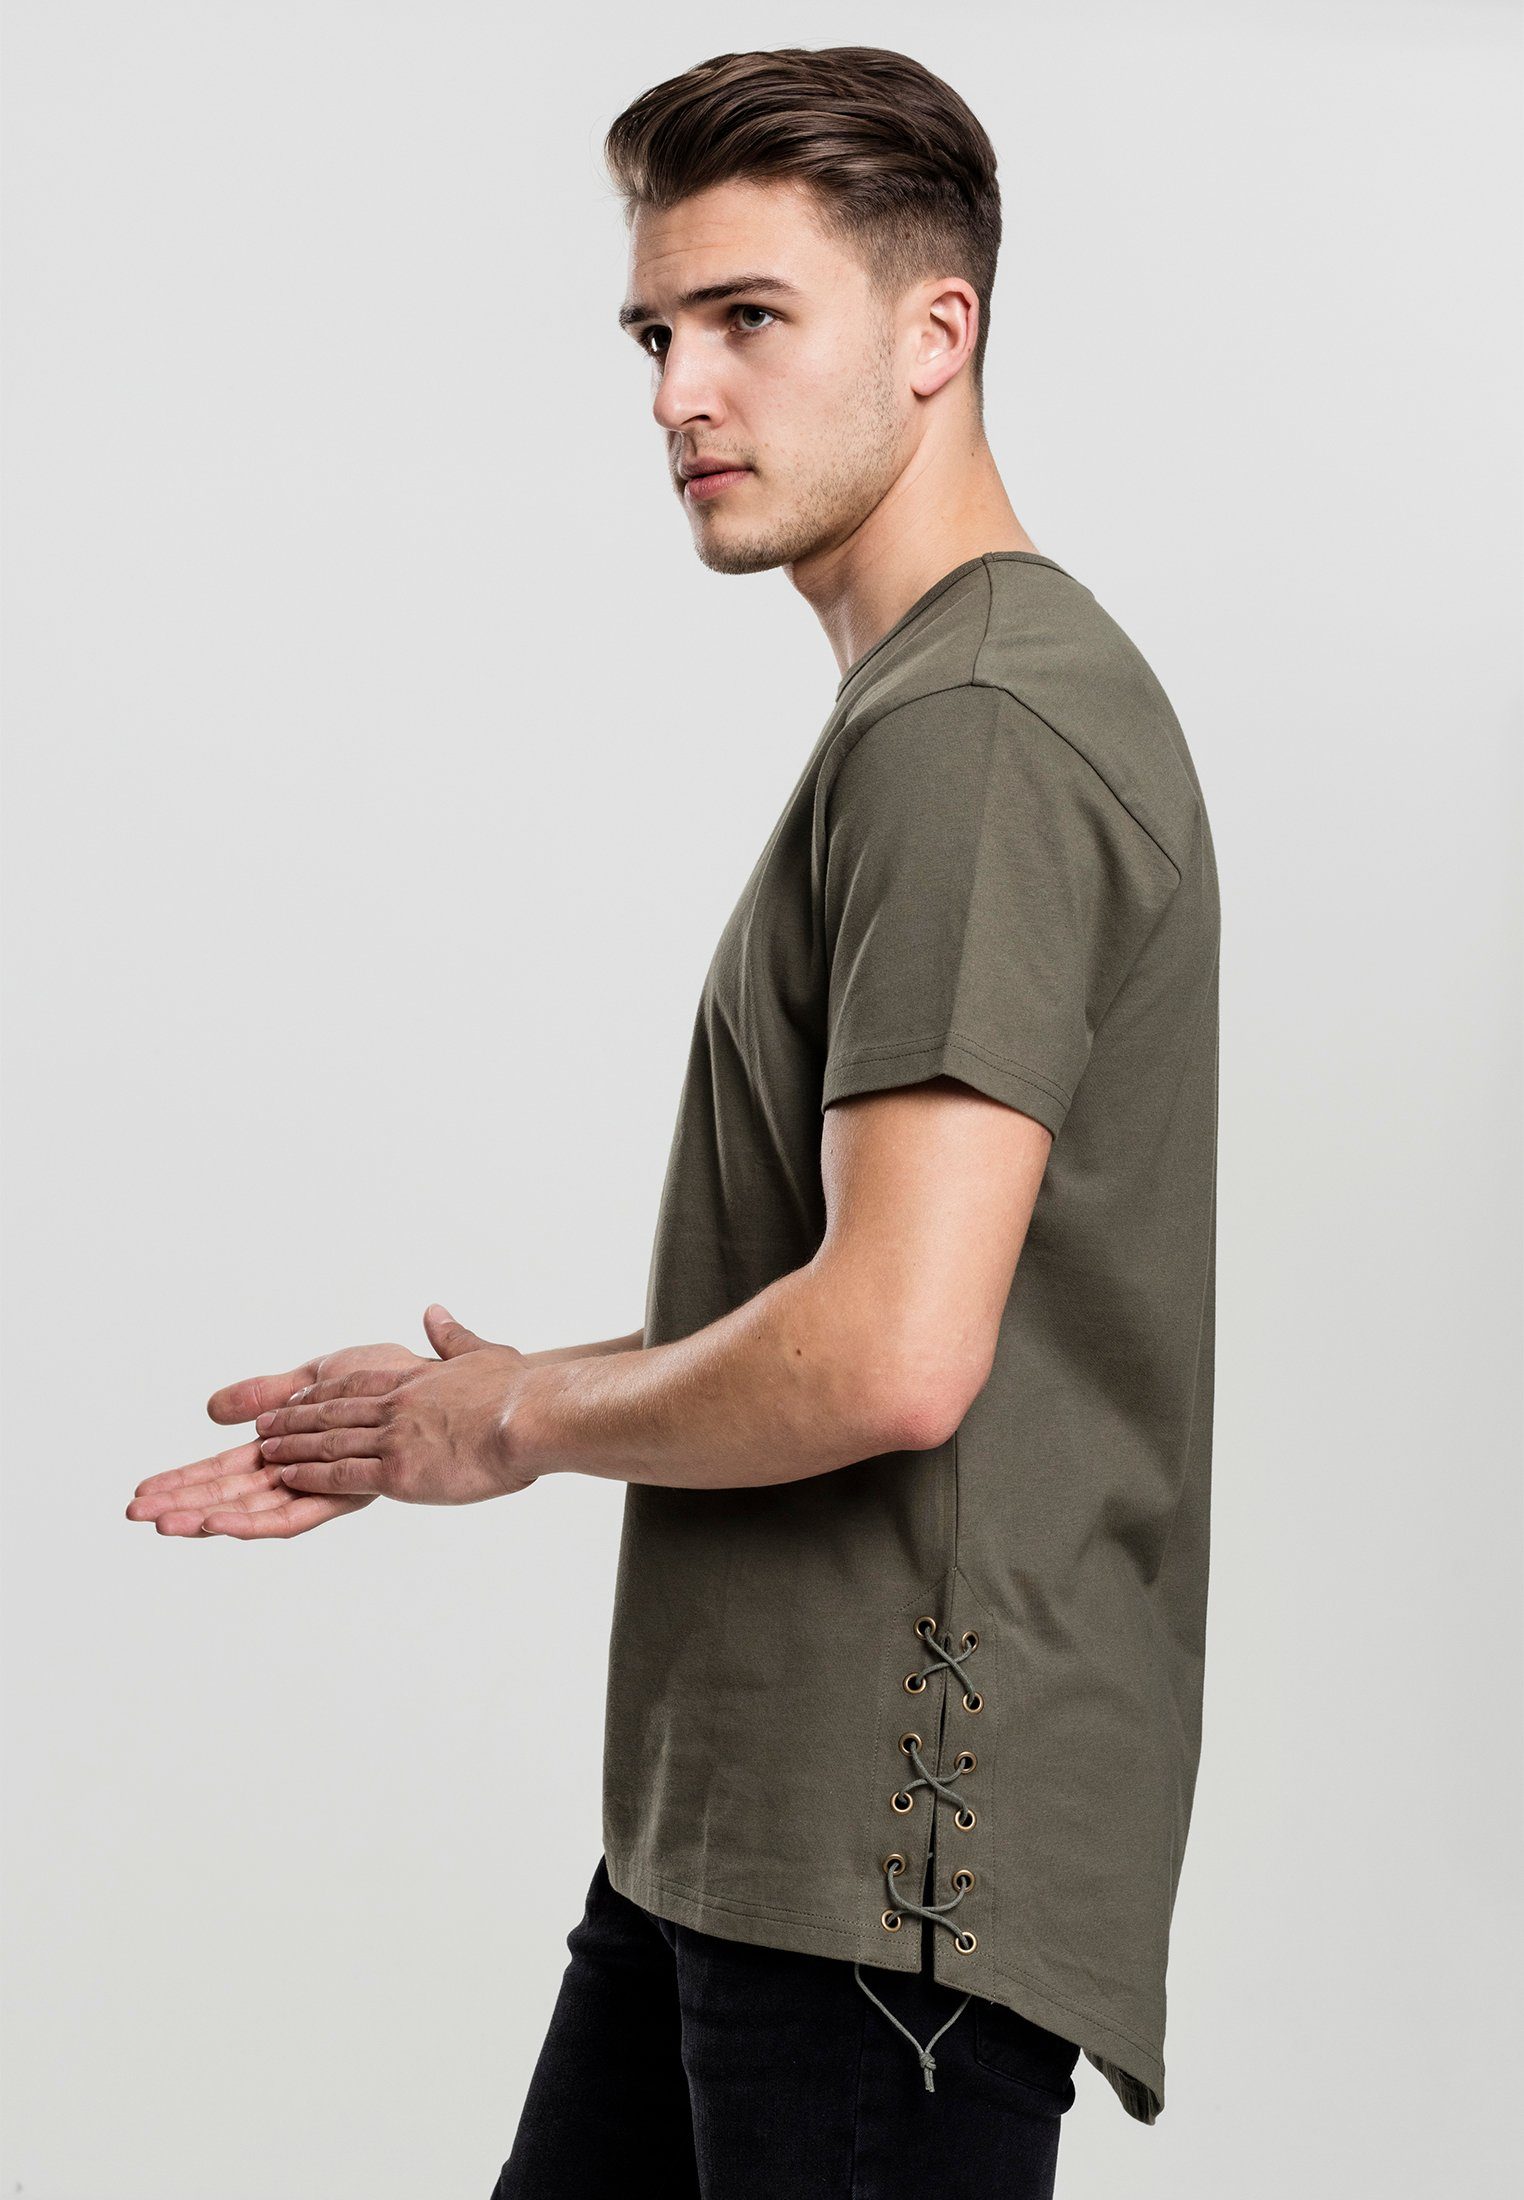 URBAN CLASSICS T-Shirt Up Lace olive Long TB1777